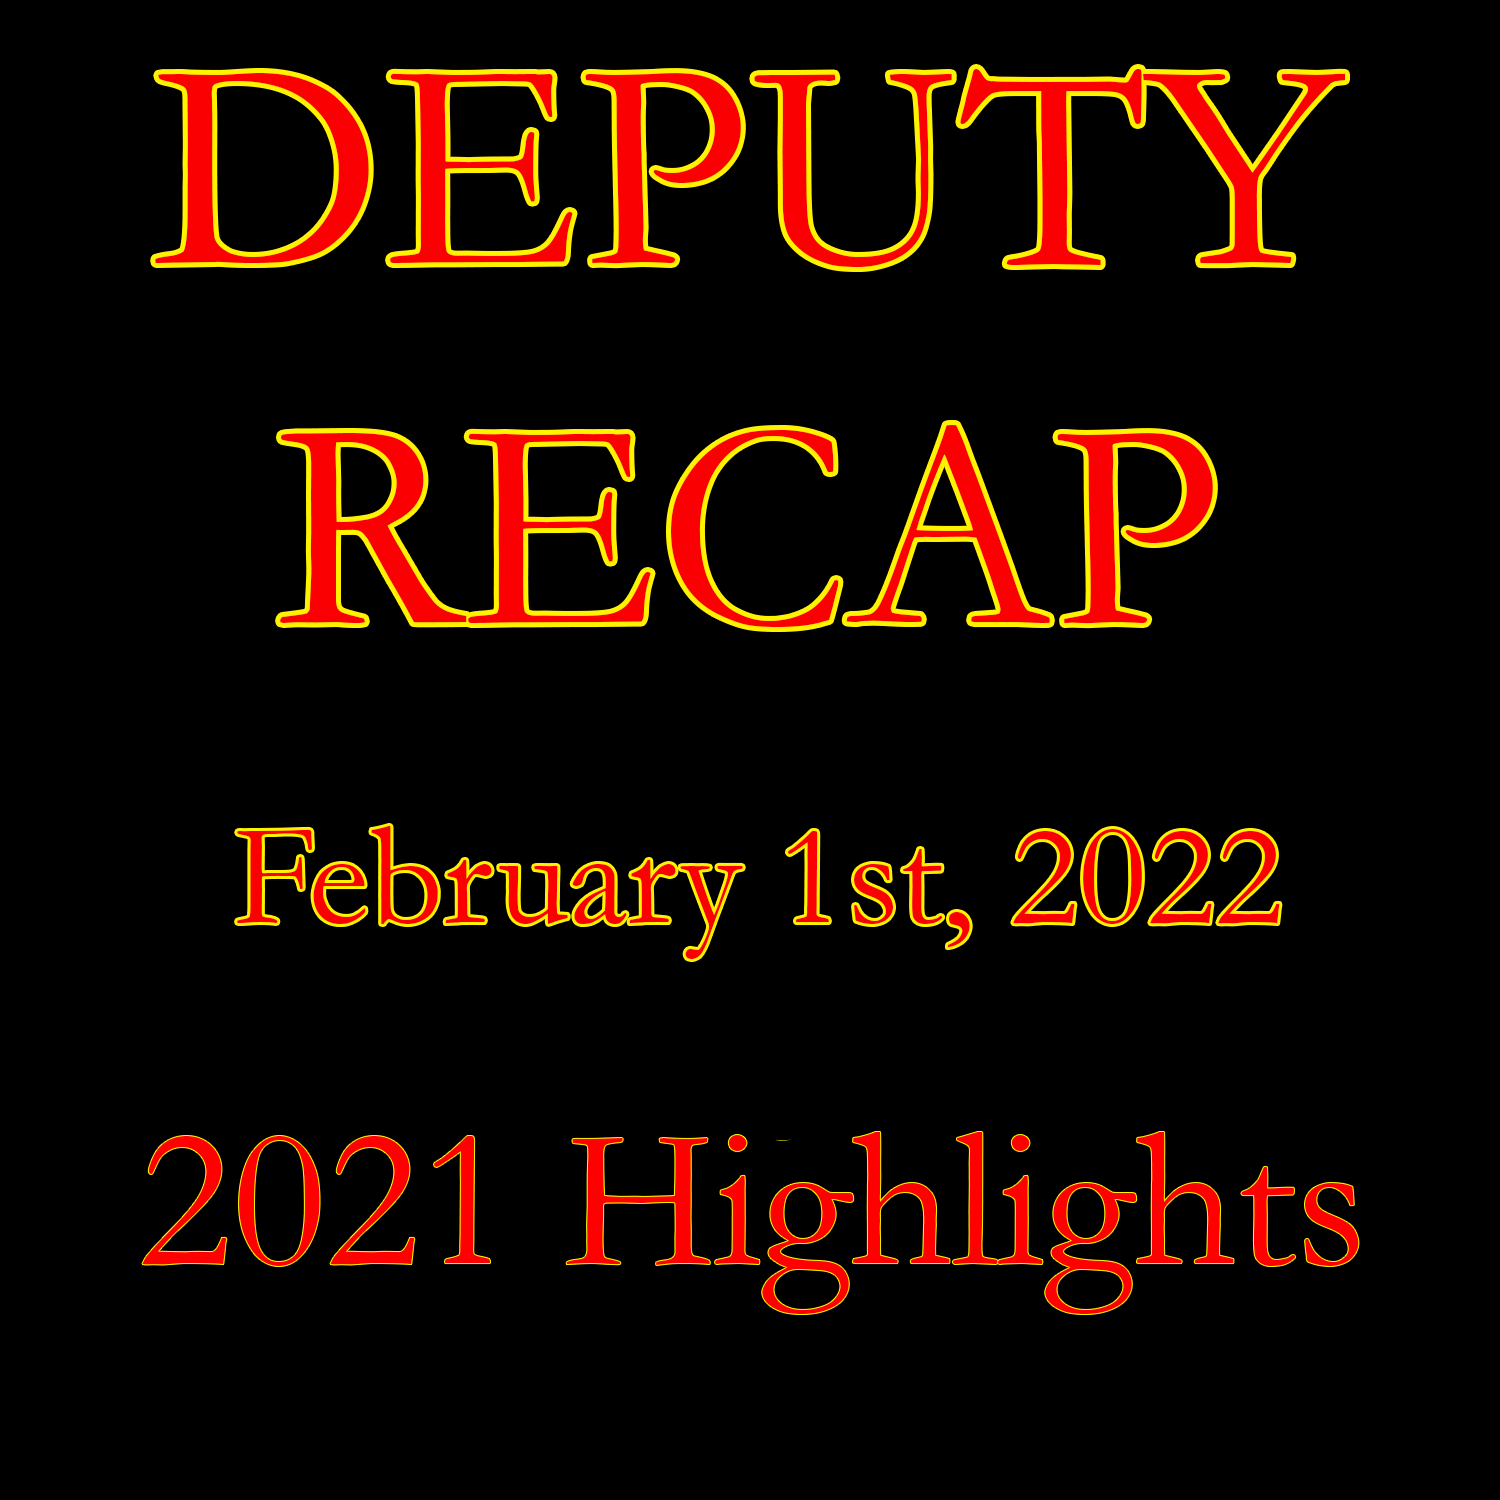 Movie Recap - February 1st, 2022 (2021 Recap)